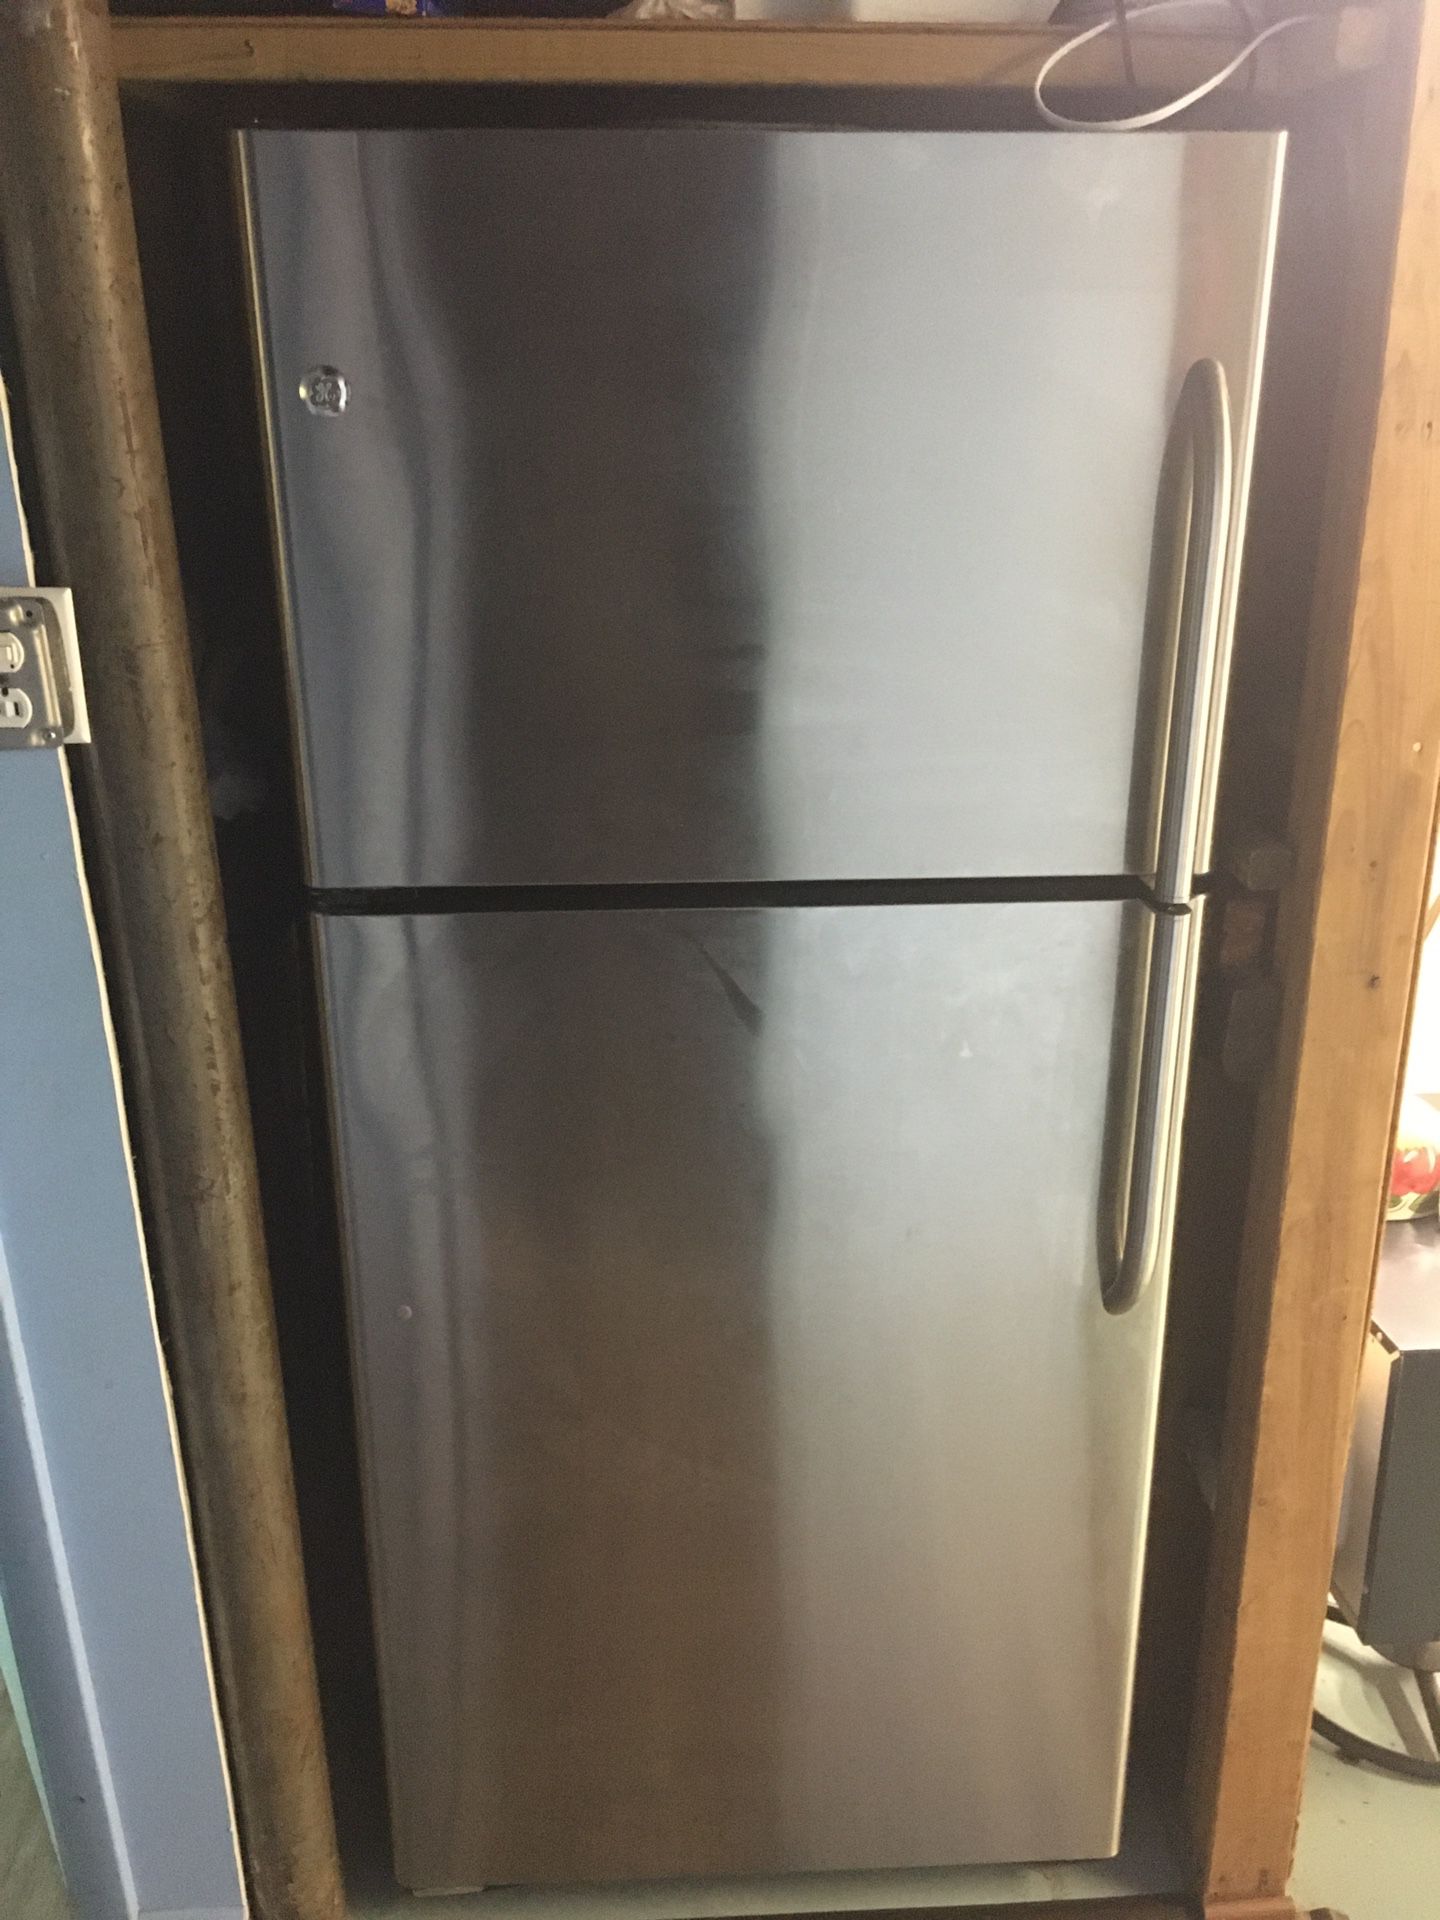 GE 33in. Stainless steel top freezer fridge in exelent condition